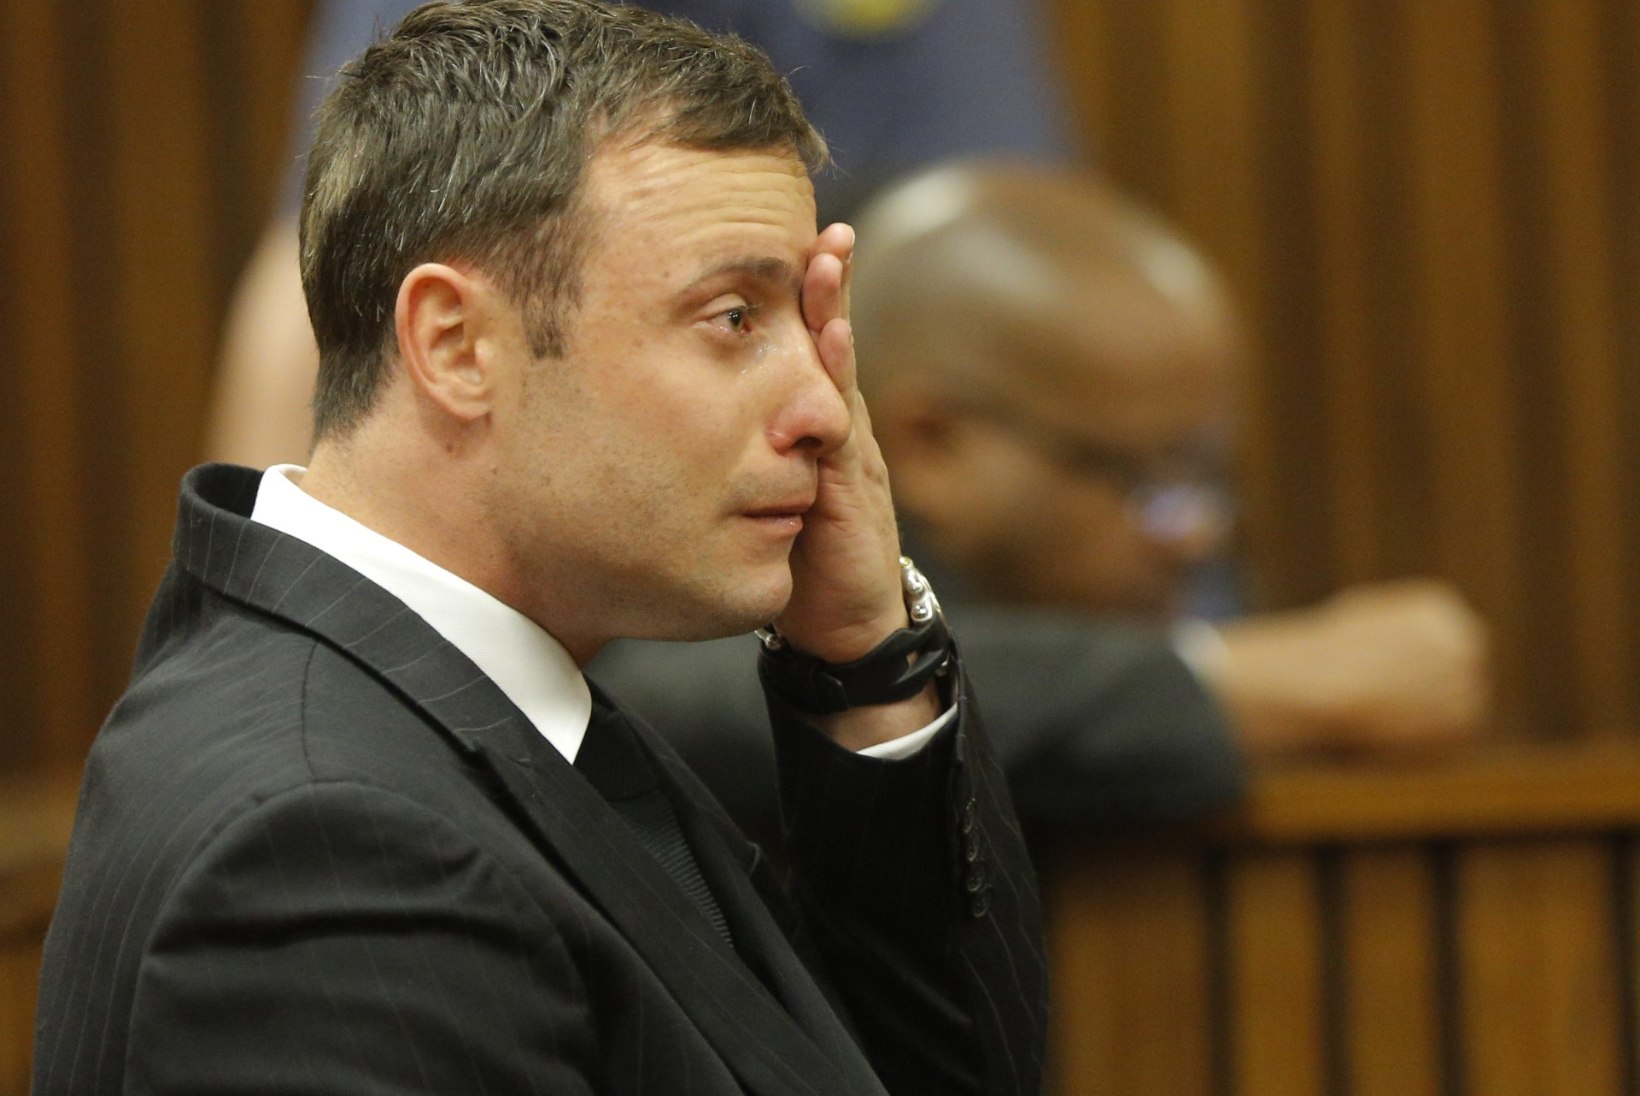 Kauni modelli mõrvanud Oscar Pistoriuse kohtusaaga võttis järjekordse dramaatilise pöörde